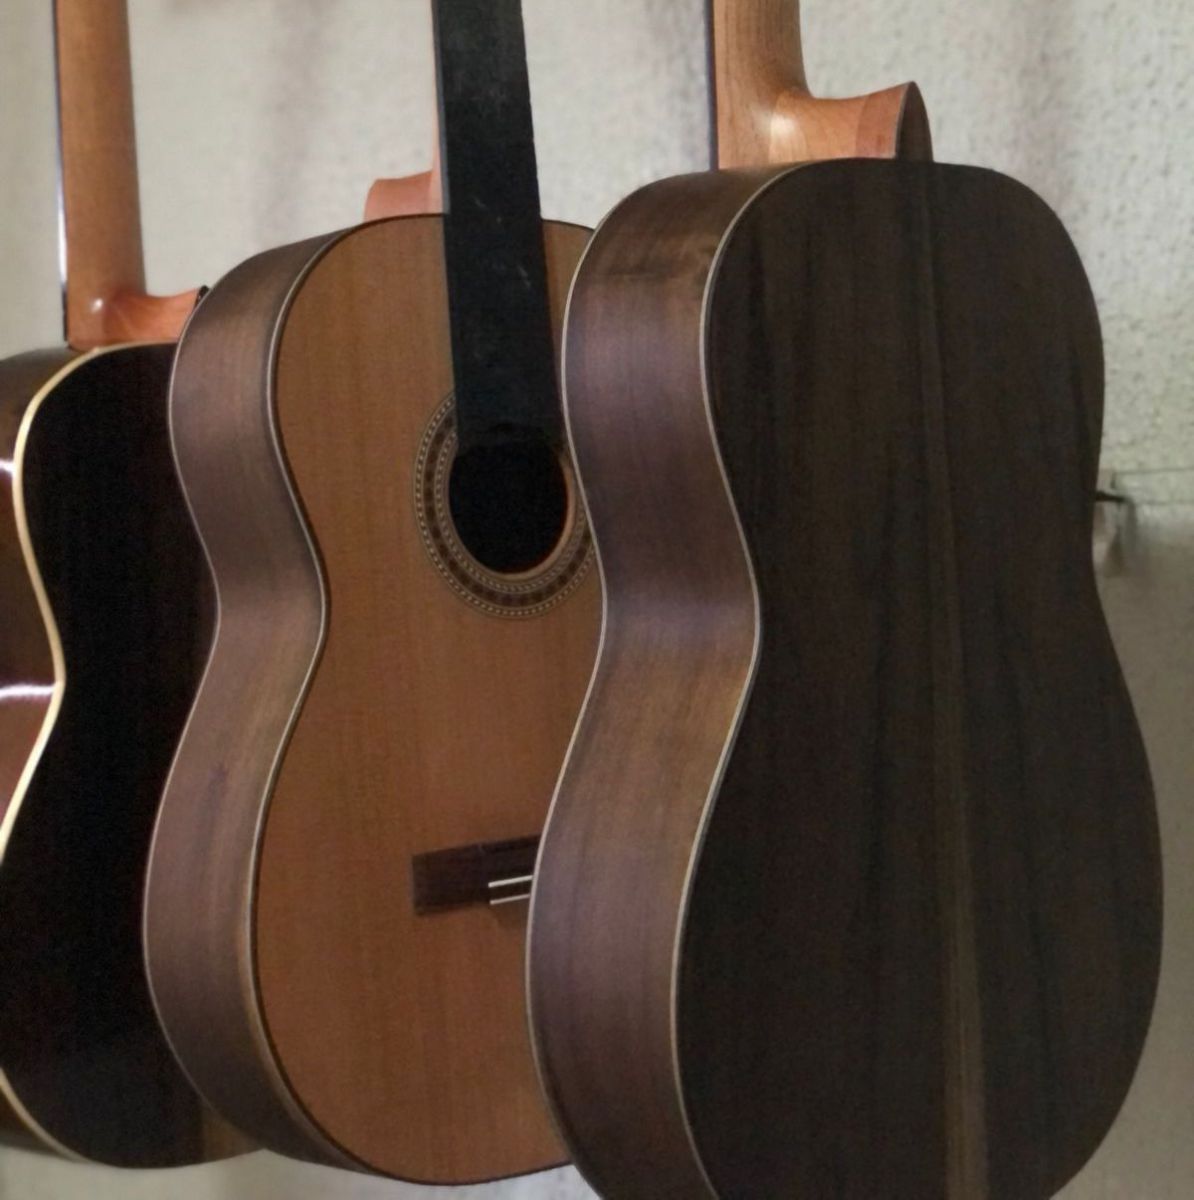 Nova série de violões será lançada em outubro para pronta entrega - Foto Série de violões Alba, em fase de construção